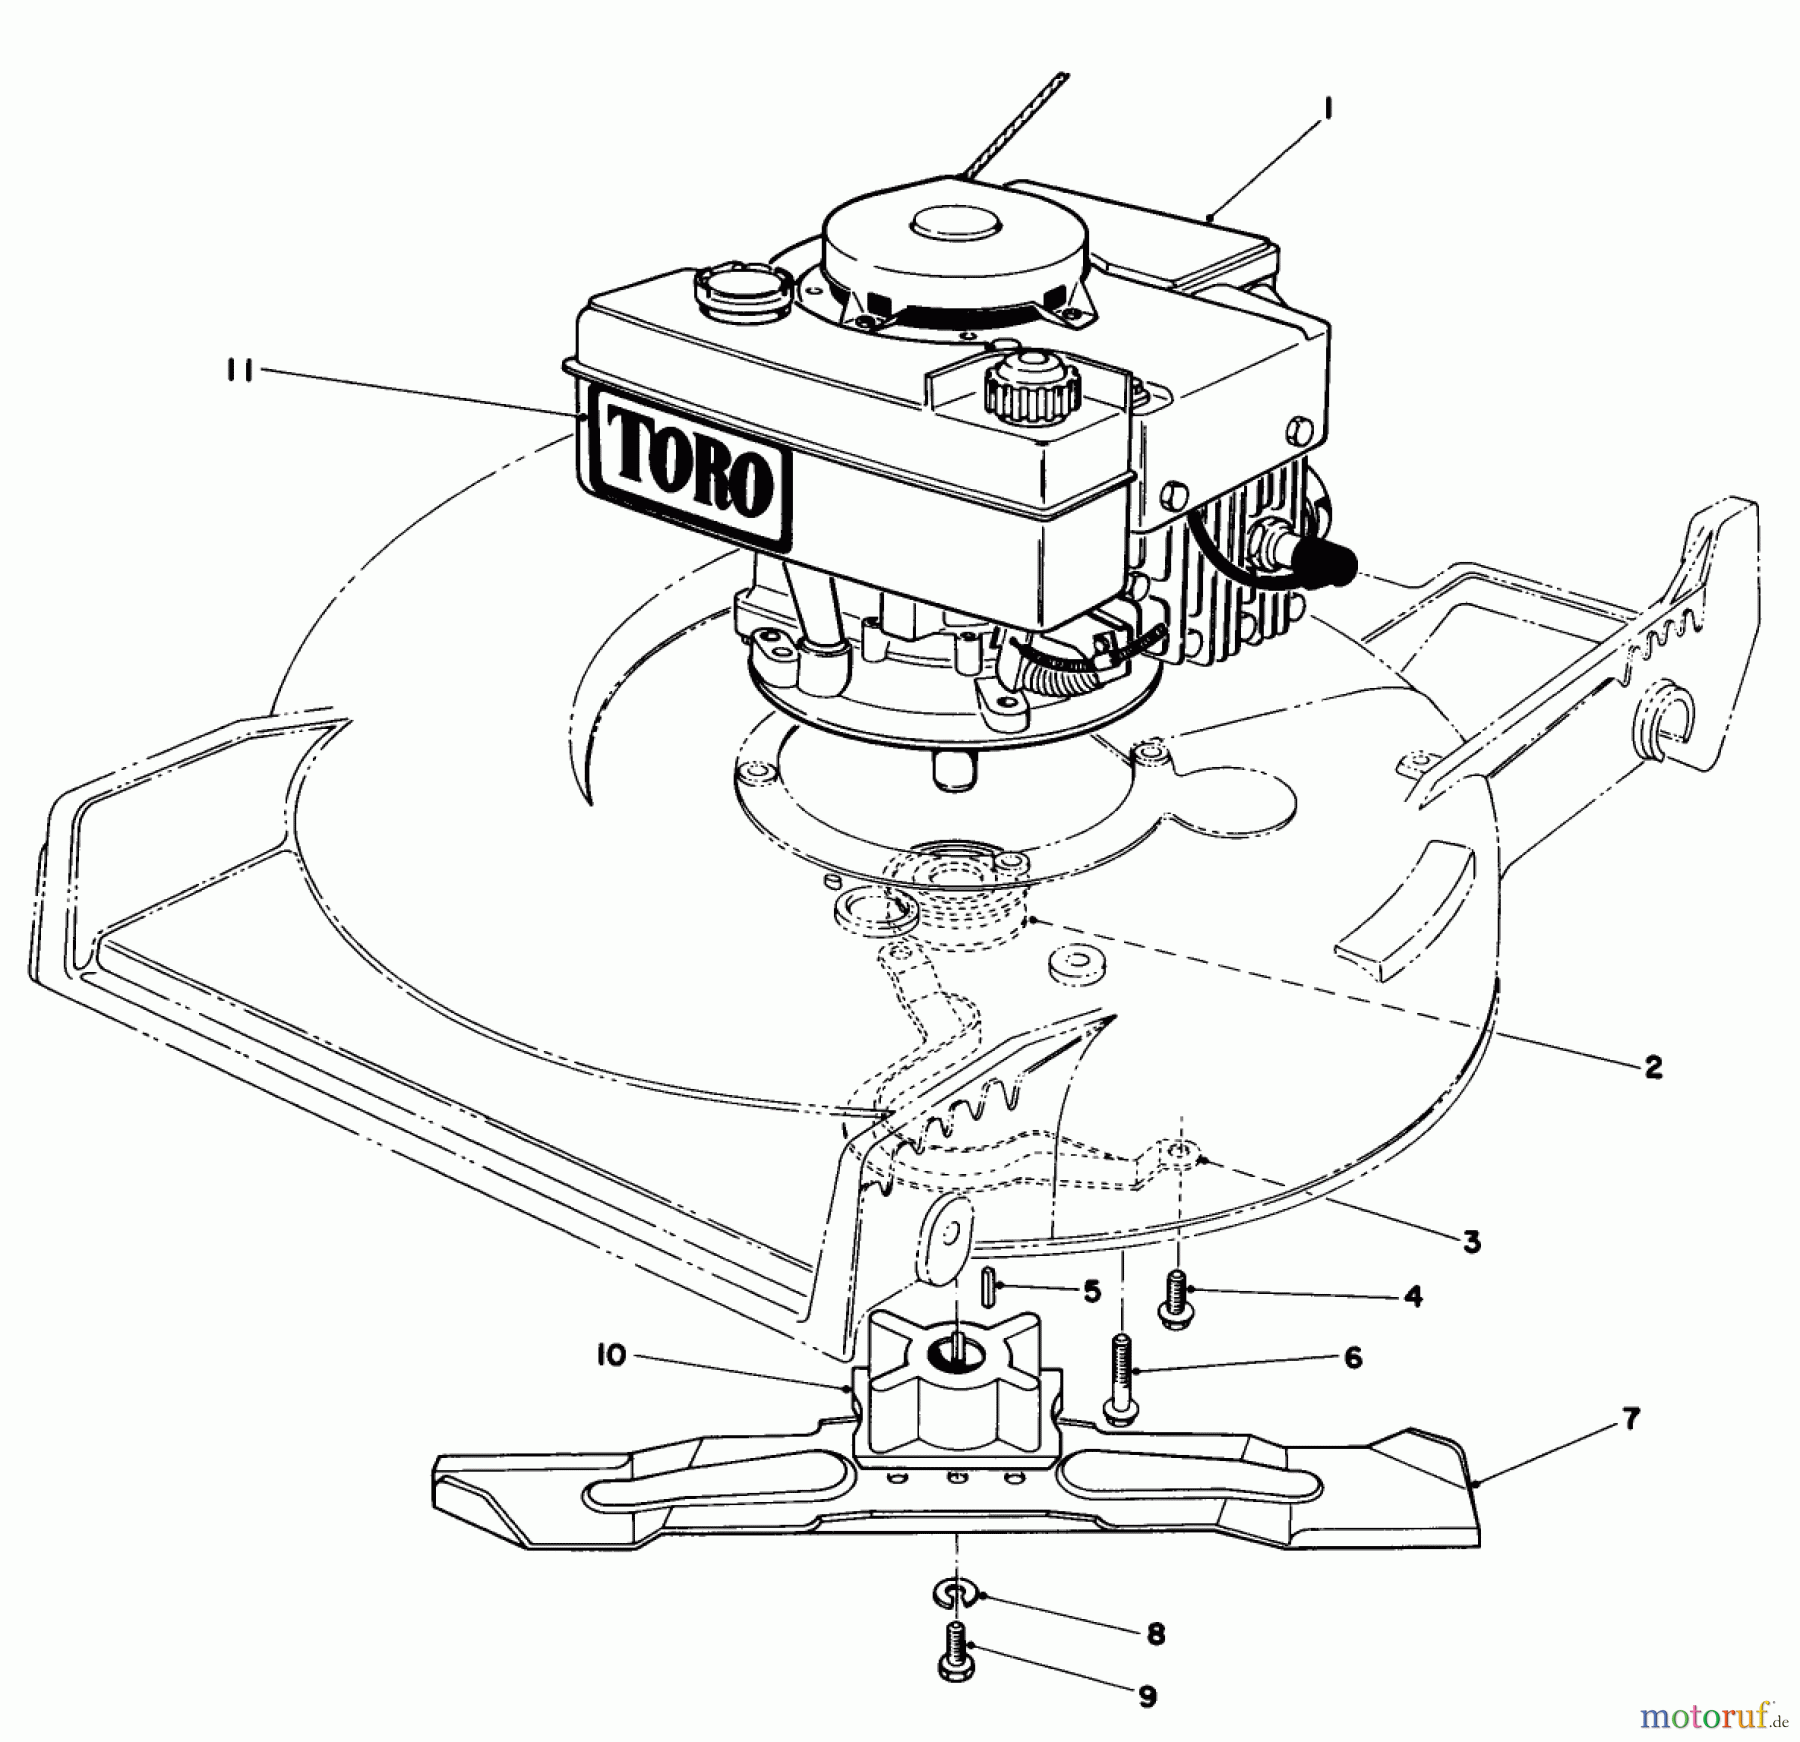  Toro Neu Mowers, Walk-Behind Seite 1 20675 - Toro Lawnmower, 1984 (4000001-4999999) ENGINE ASSEMBLY